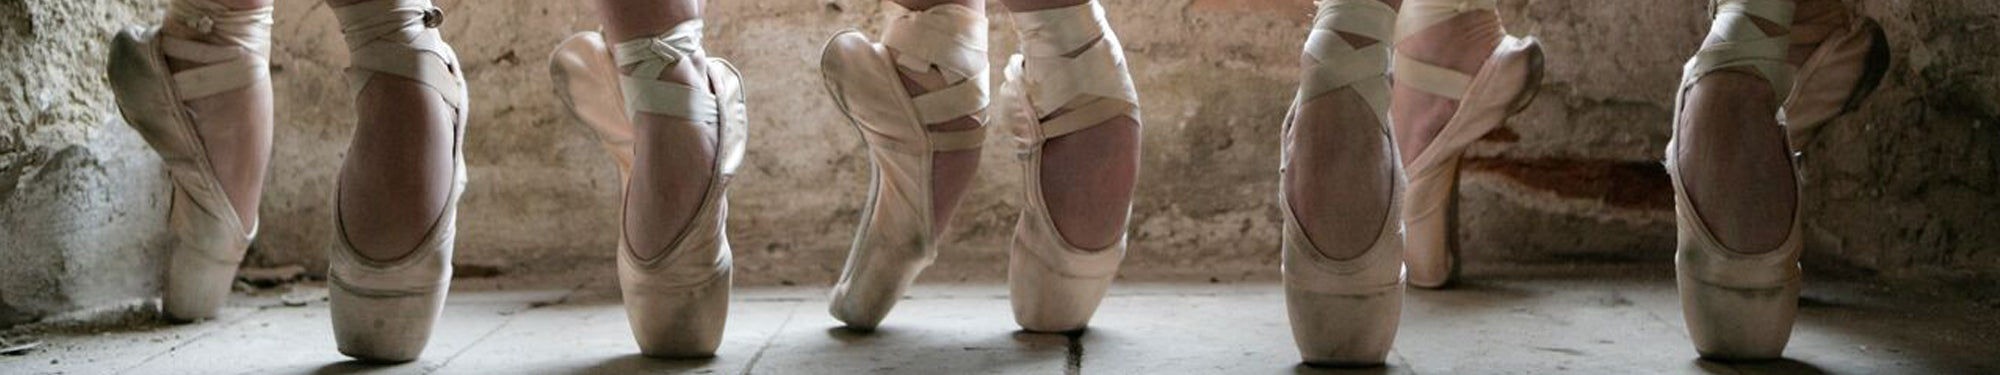 dance shoes online